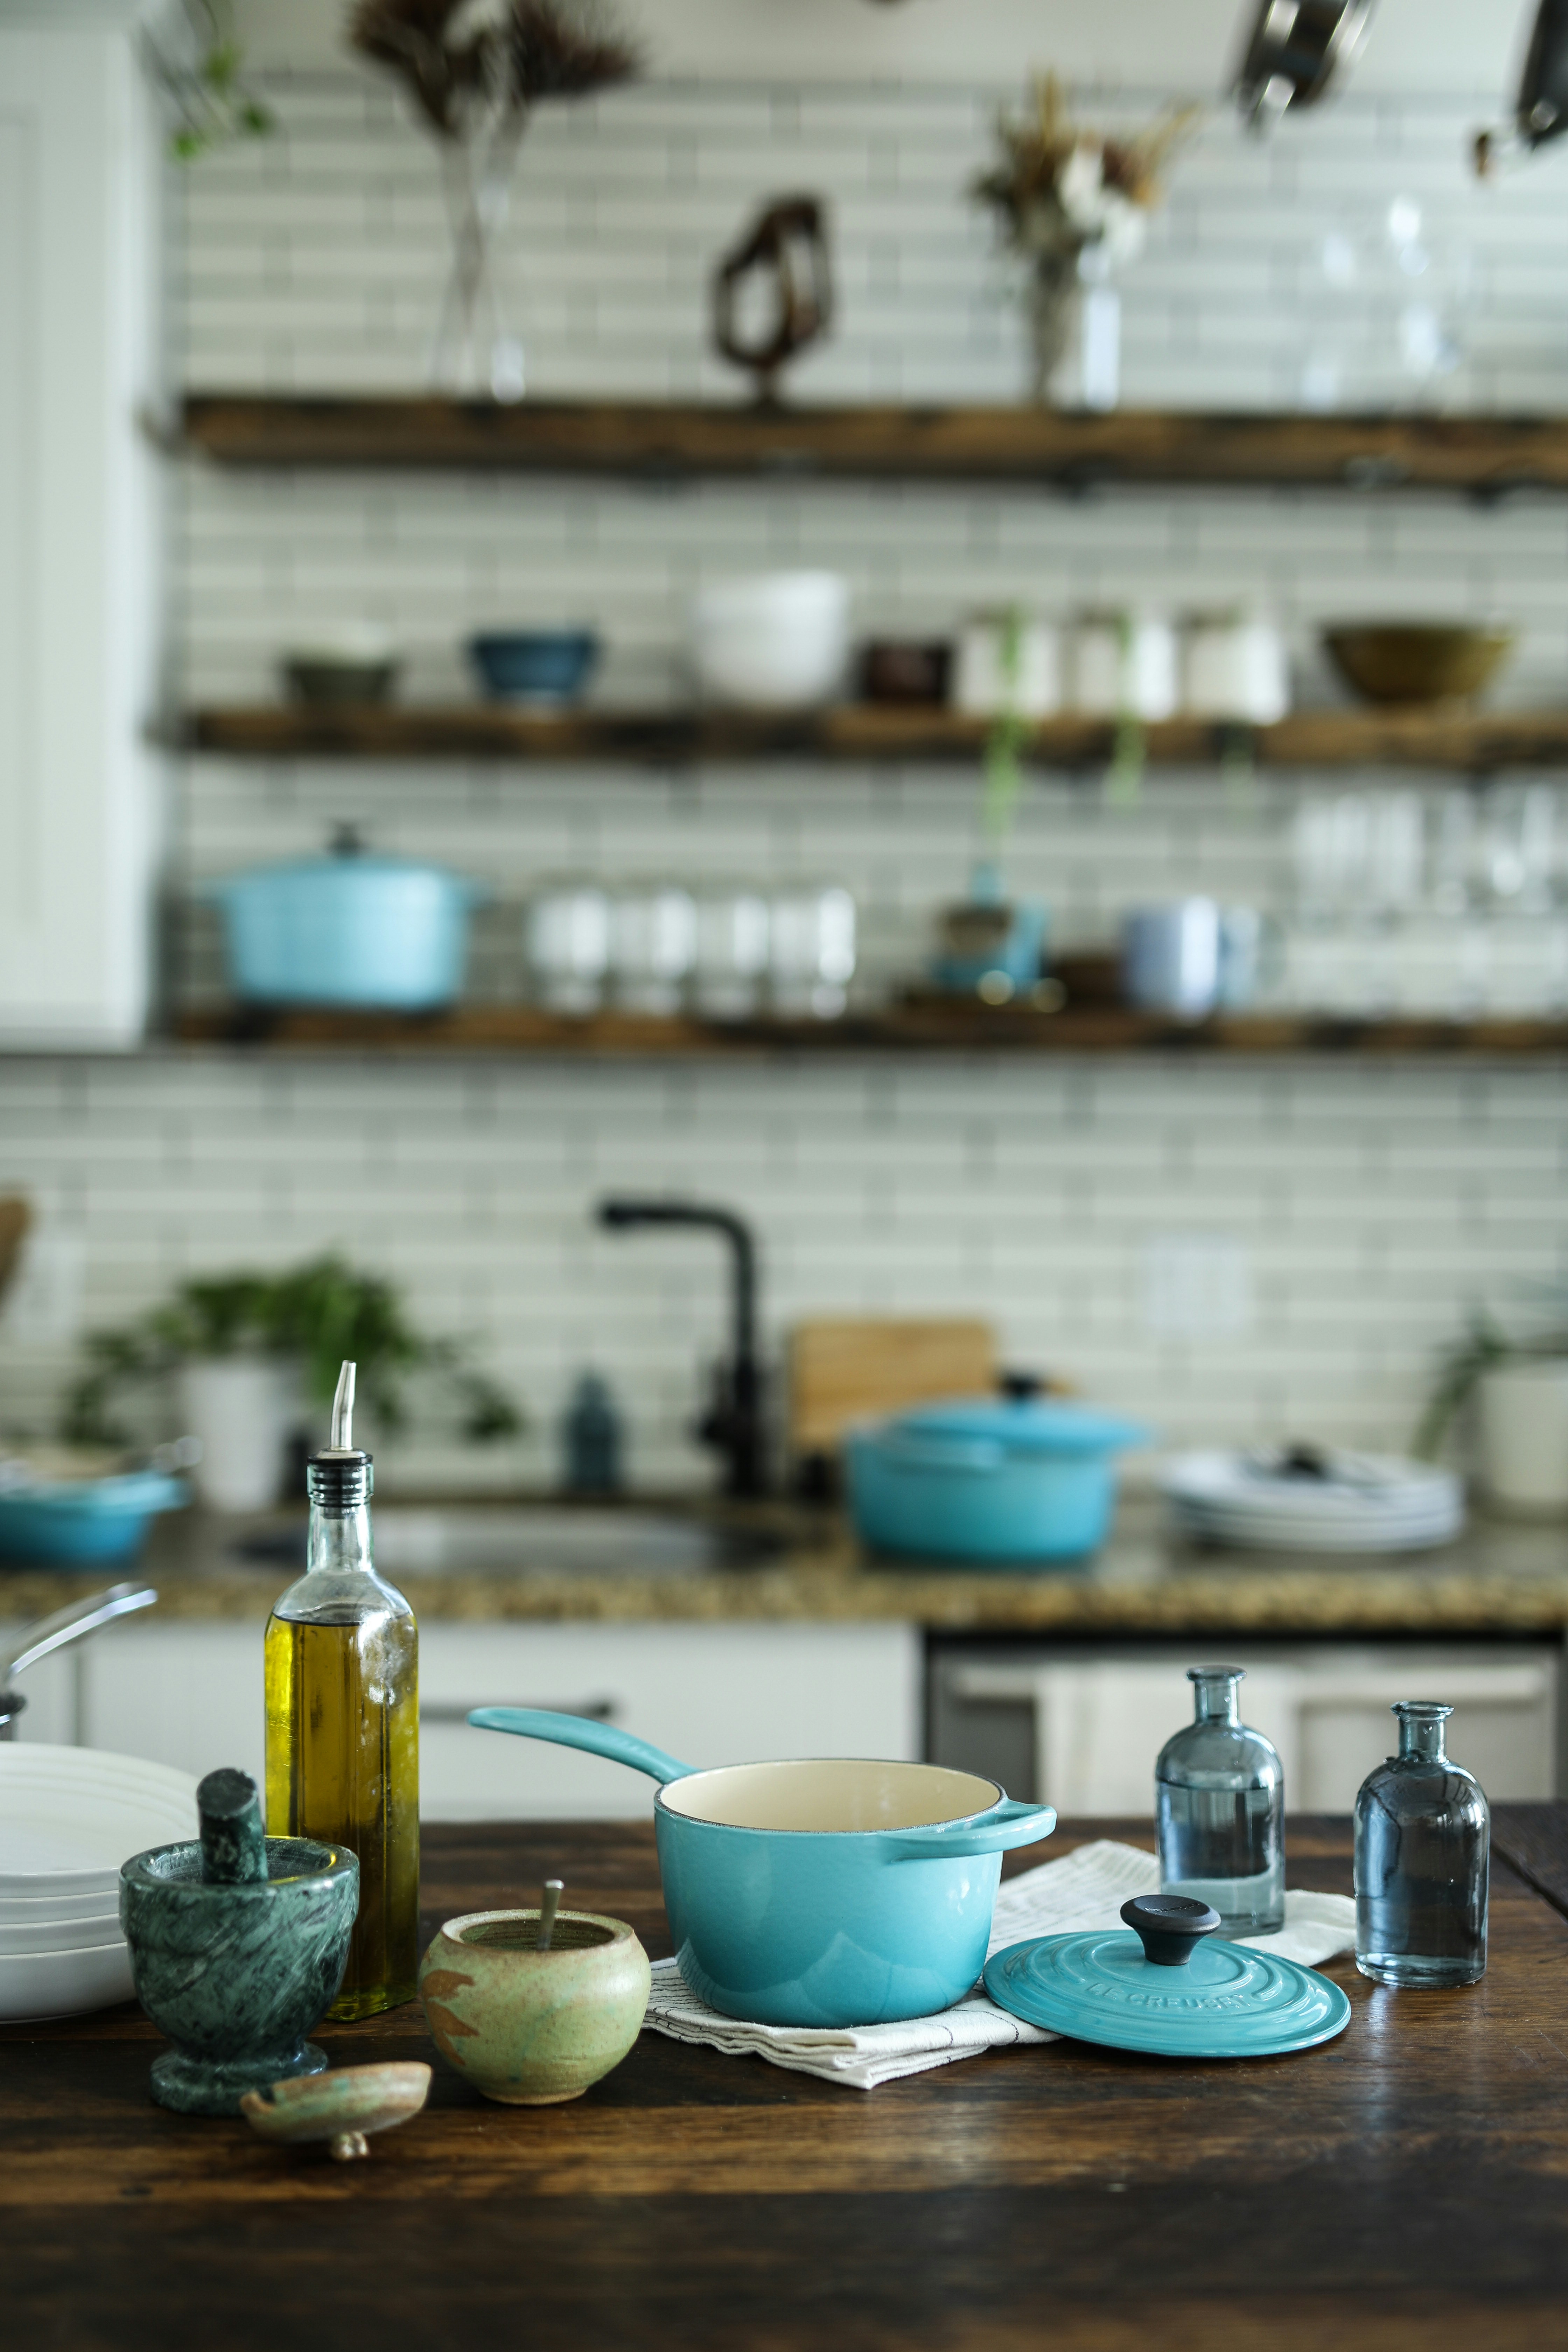 Are Ceramic Crock Pots Dishwasher Safe?